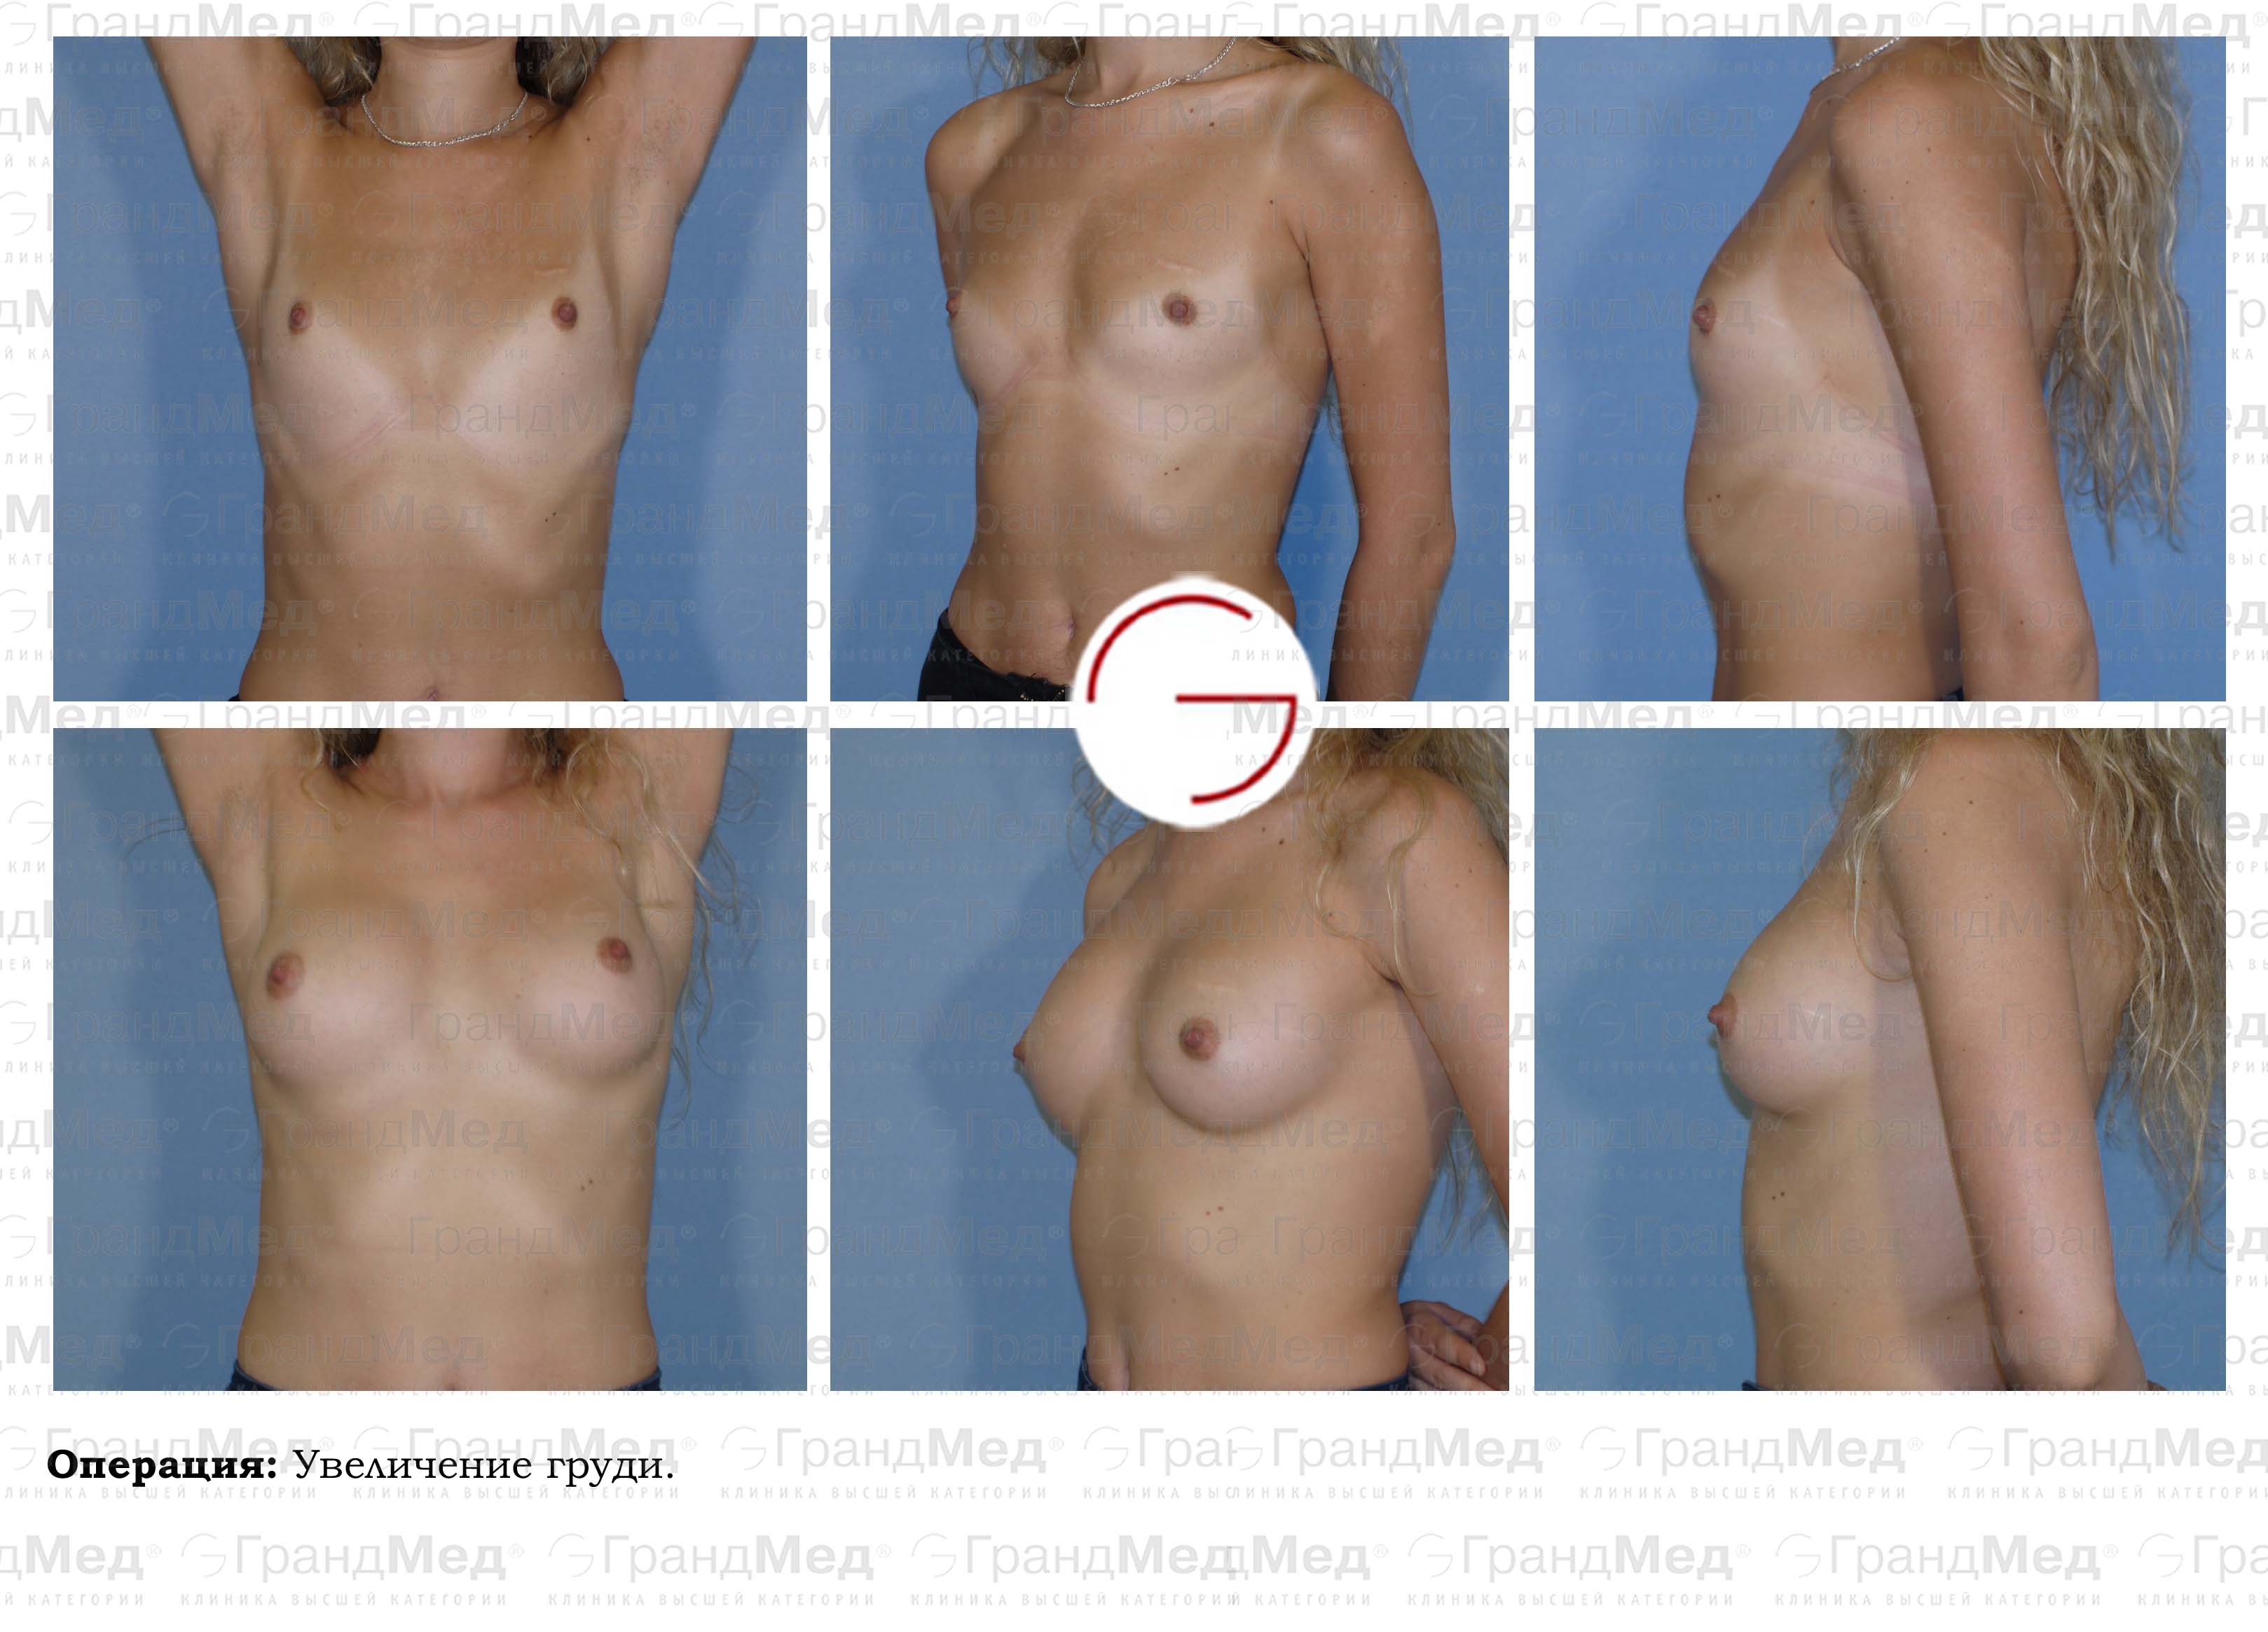 гормоны для роста груди женщин фото 115